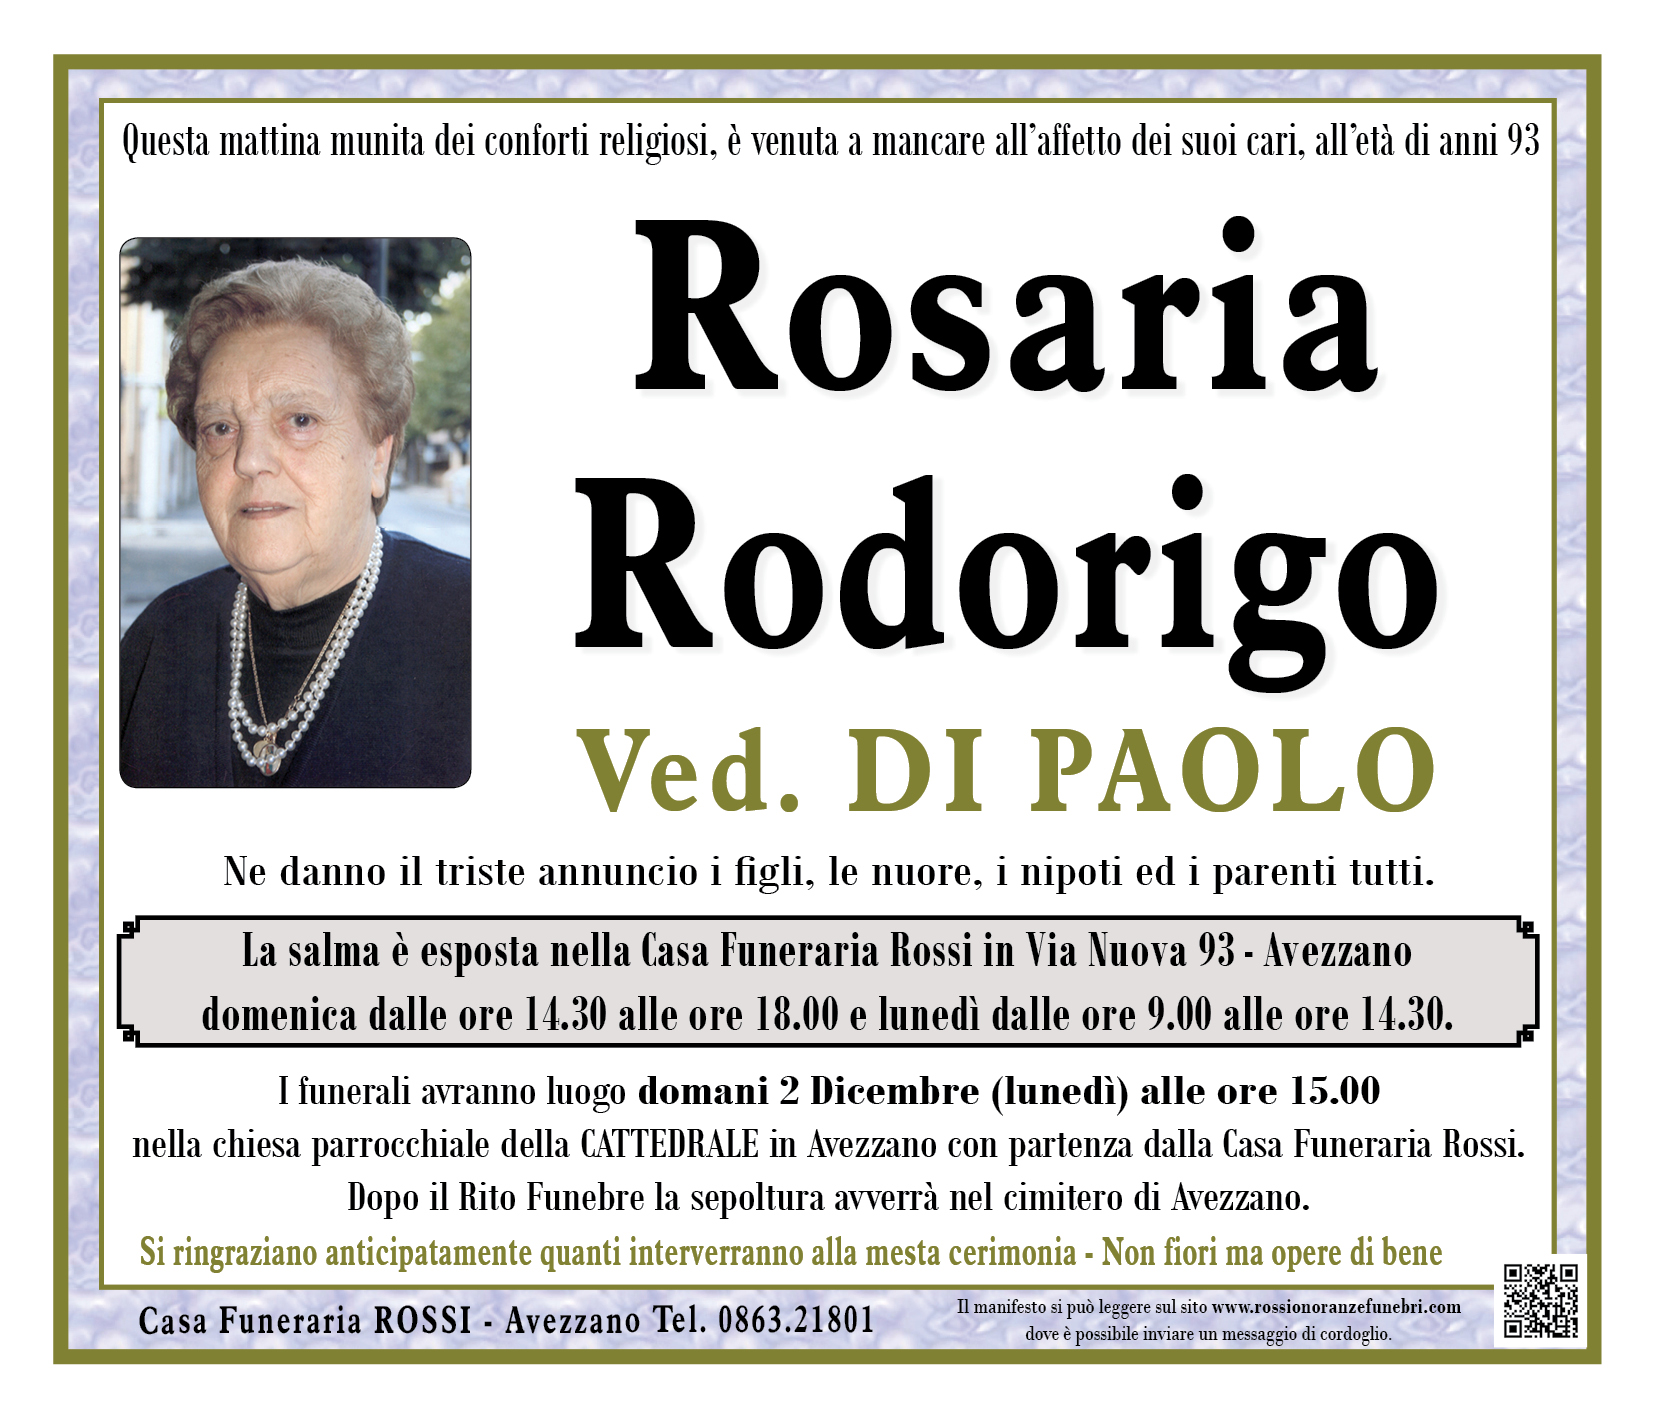 Rosaria Rodorigo